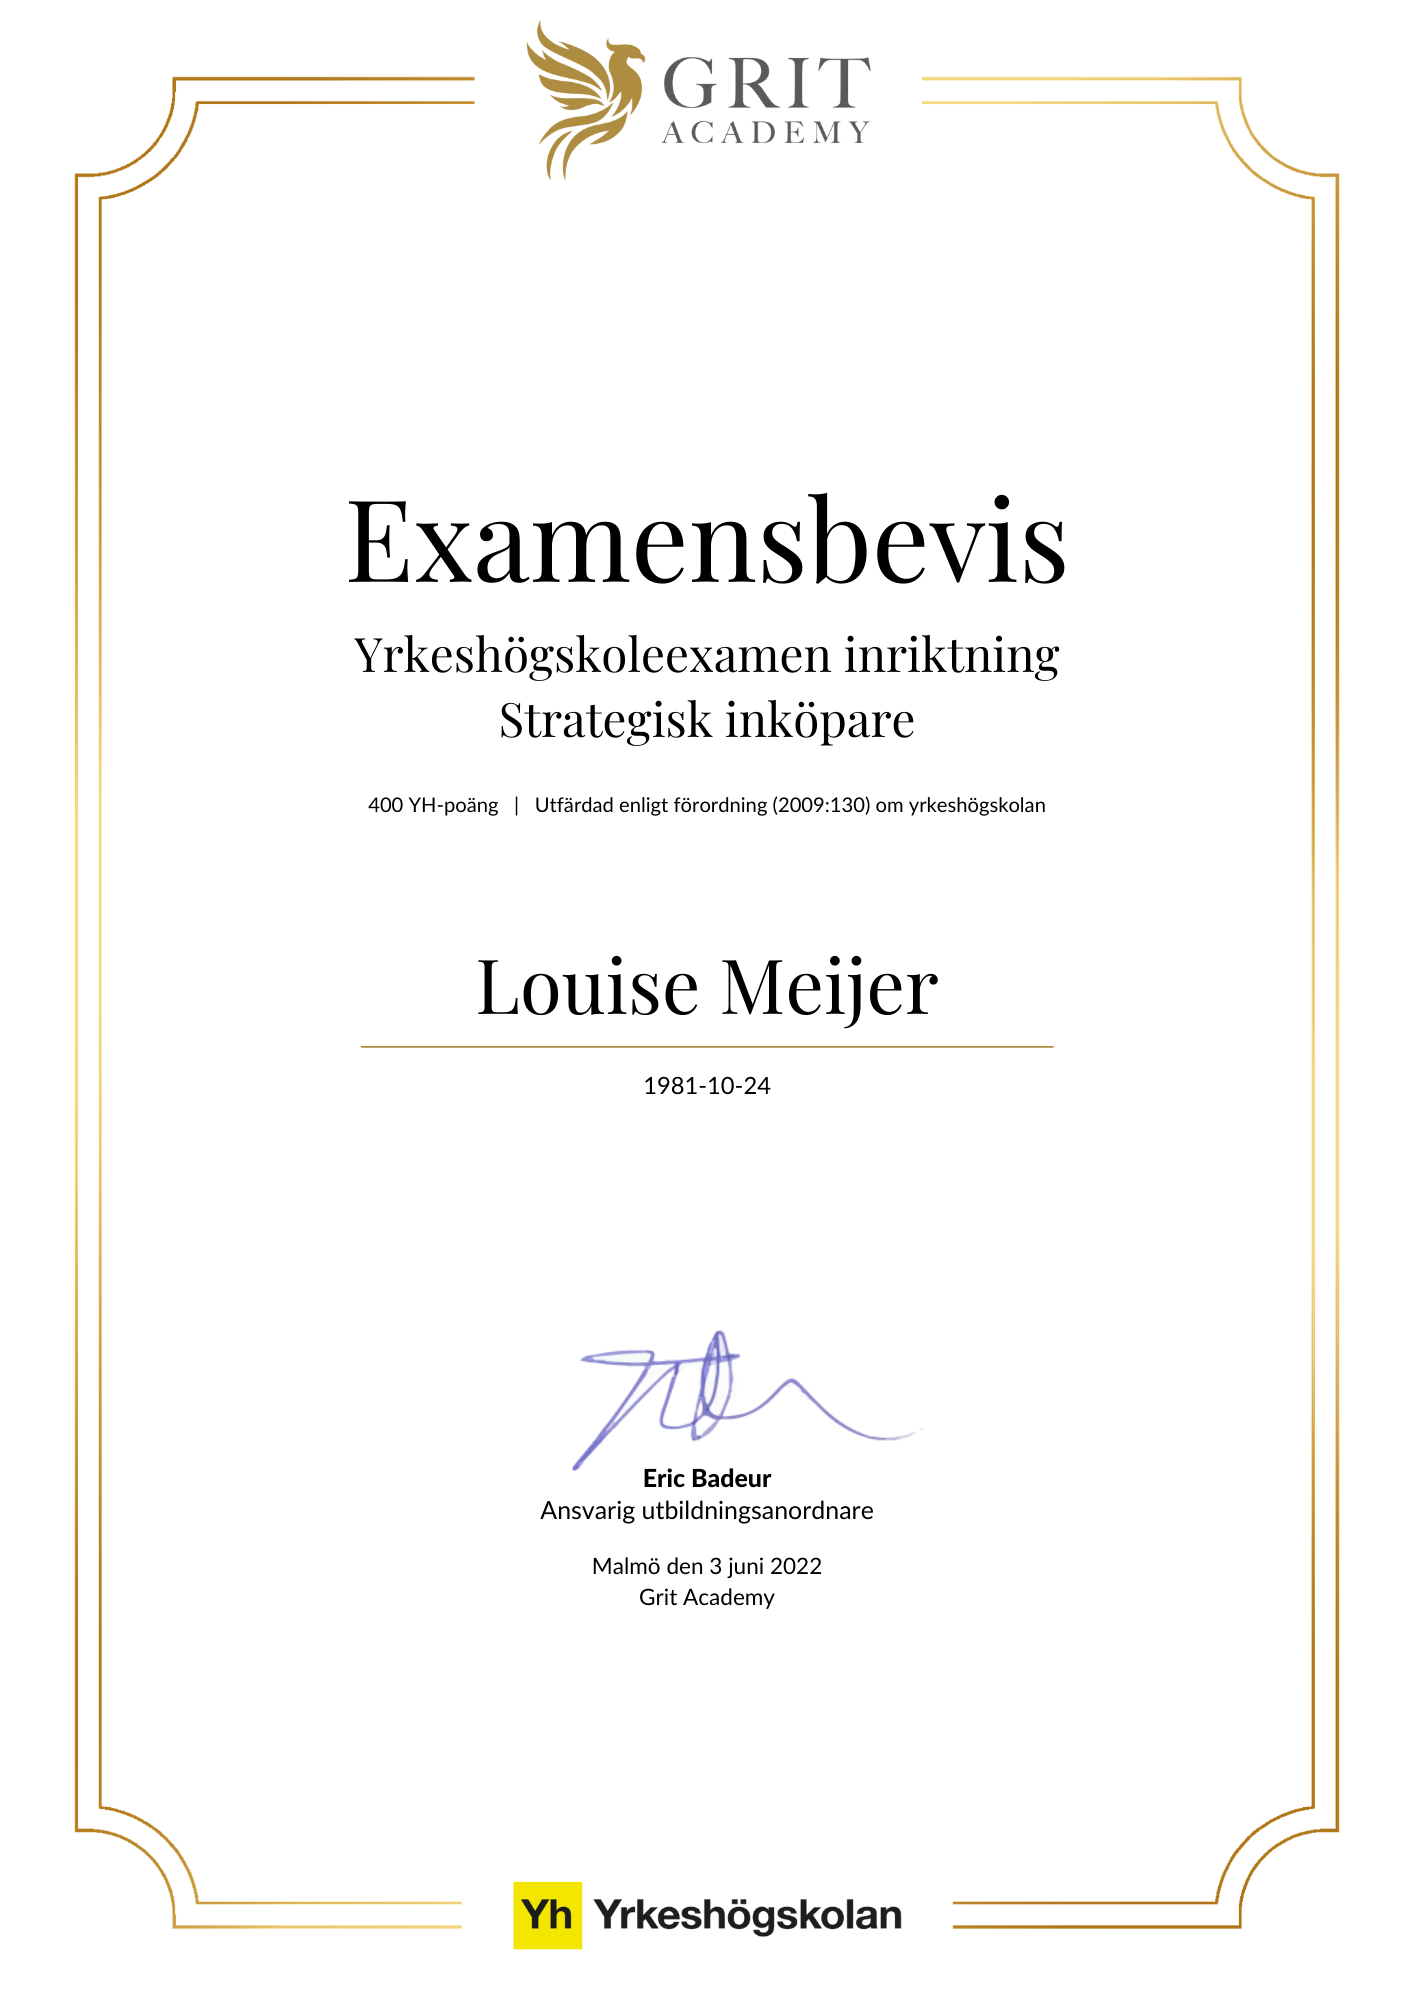 Examensbevis Louise Meijer - 1